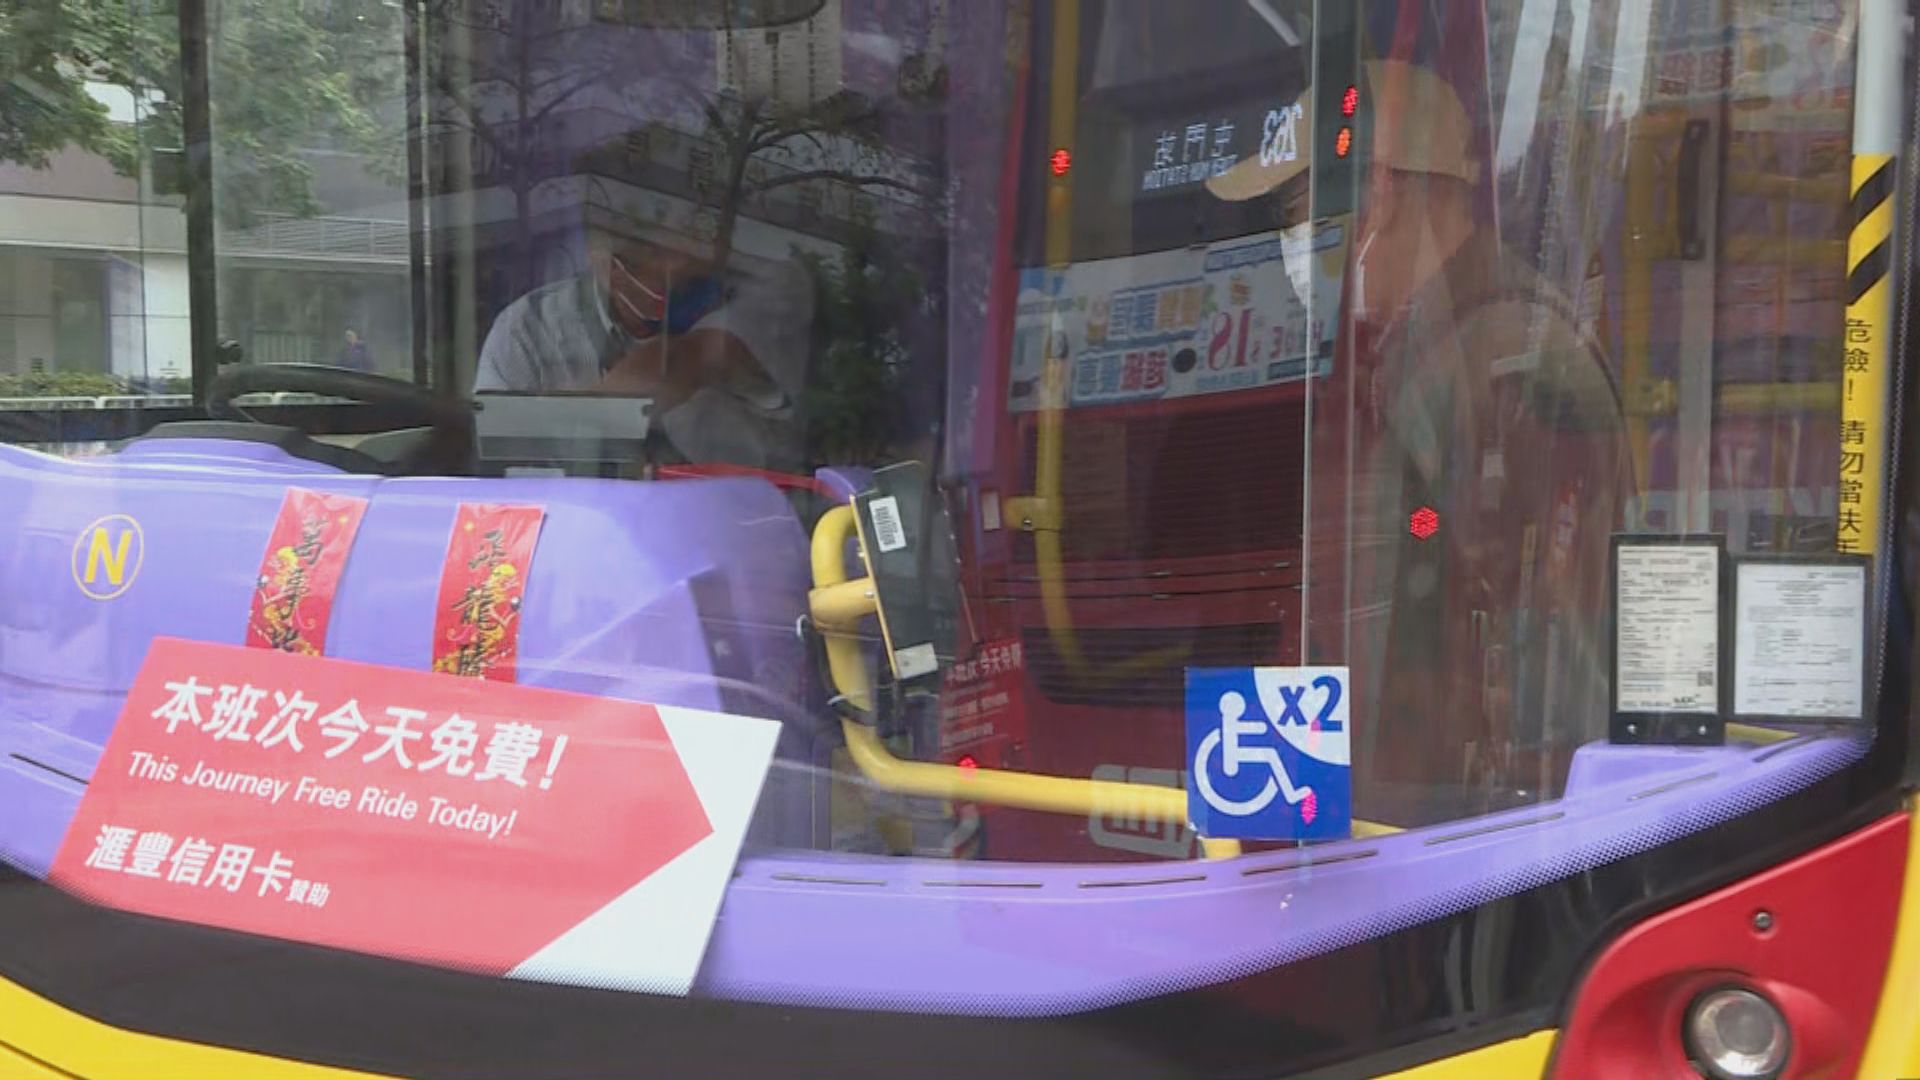 屯門往深圳灣3條巴士線全日免費 吸引不少市民北上消費